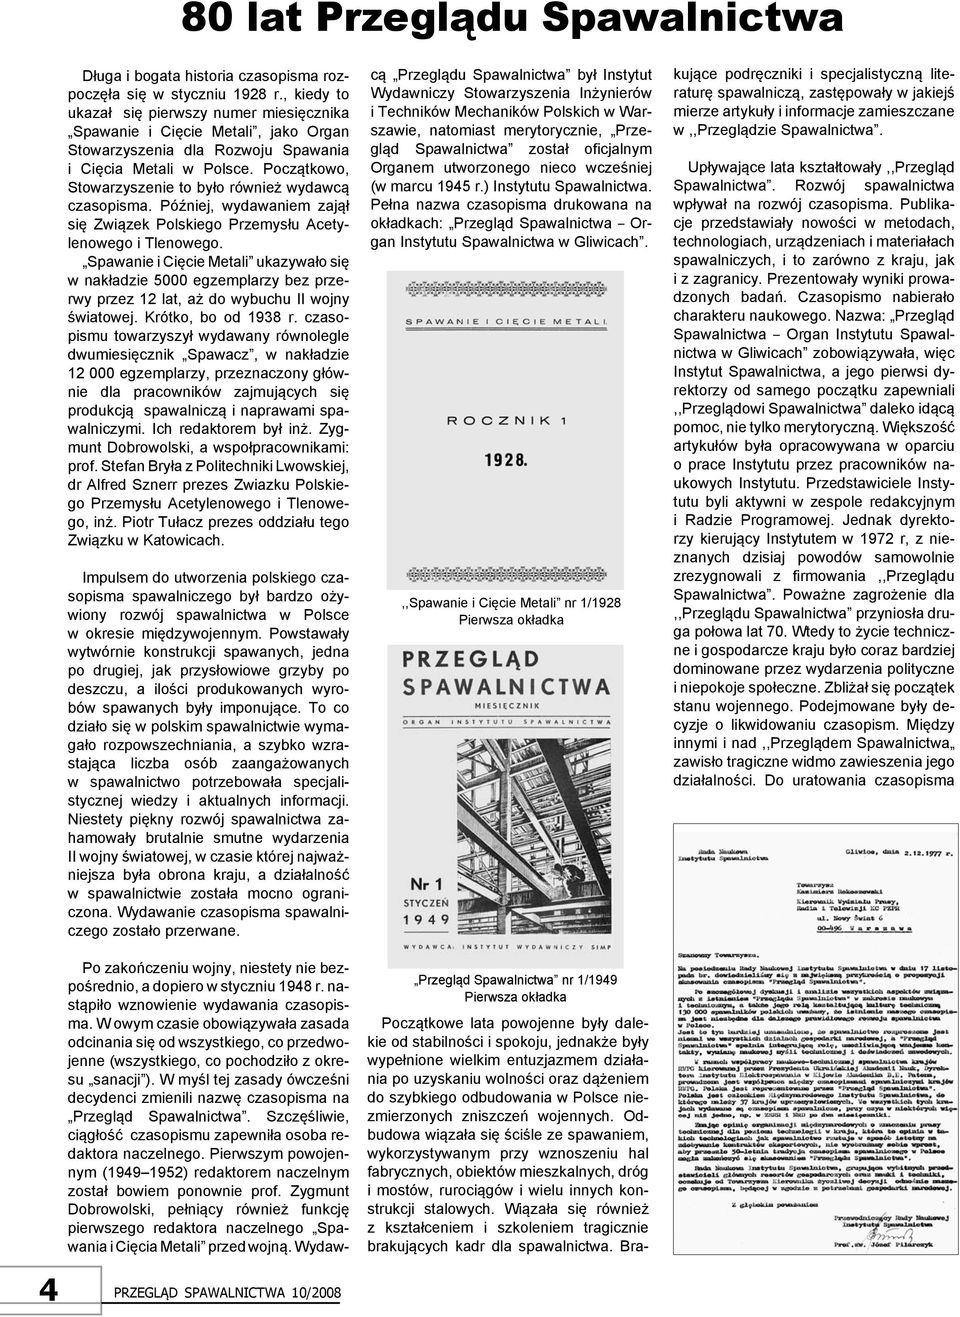 Początkowo, Stowarzyszenie to było również wydawcą czasopisma. Później, wydawaniem zajął się Związek Polskiego Przemysłu Acetylenowego i Tlenowego.